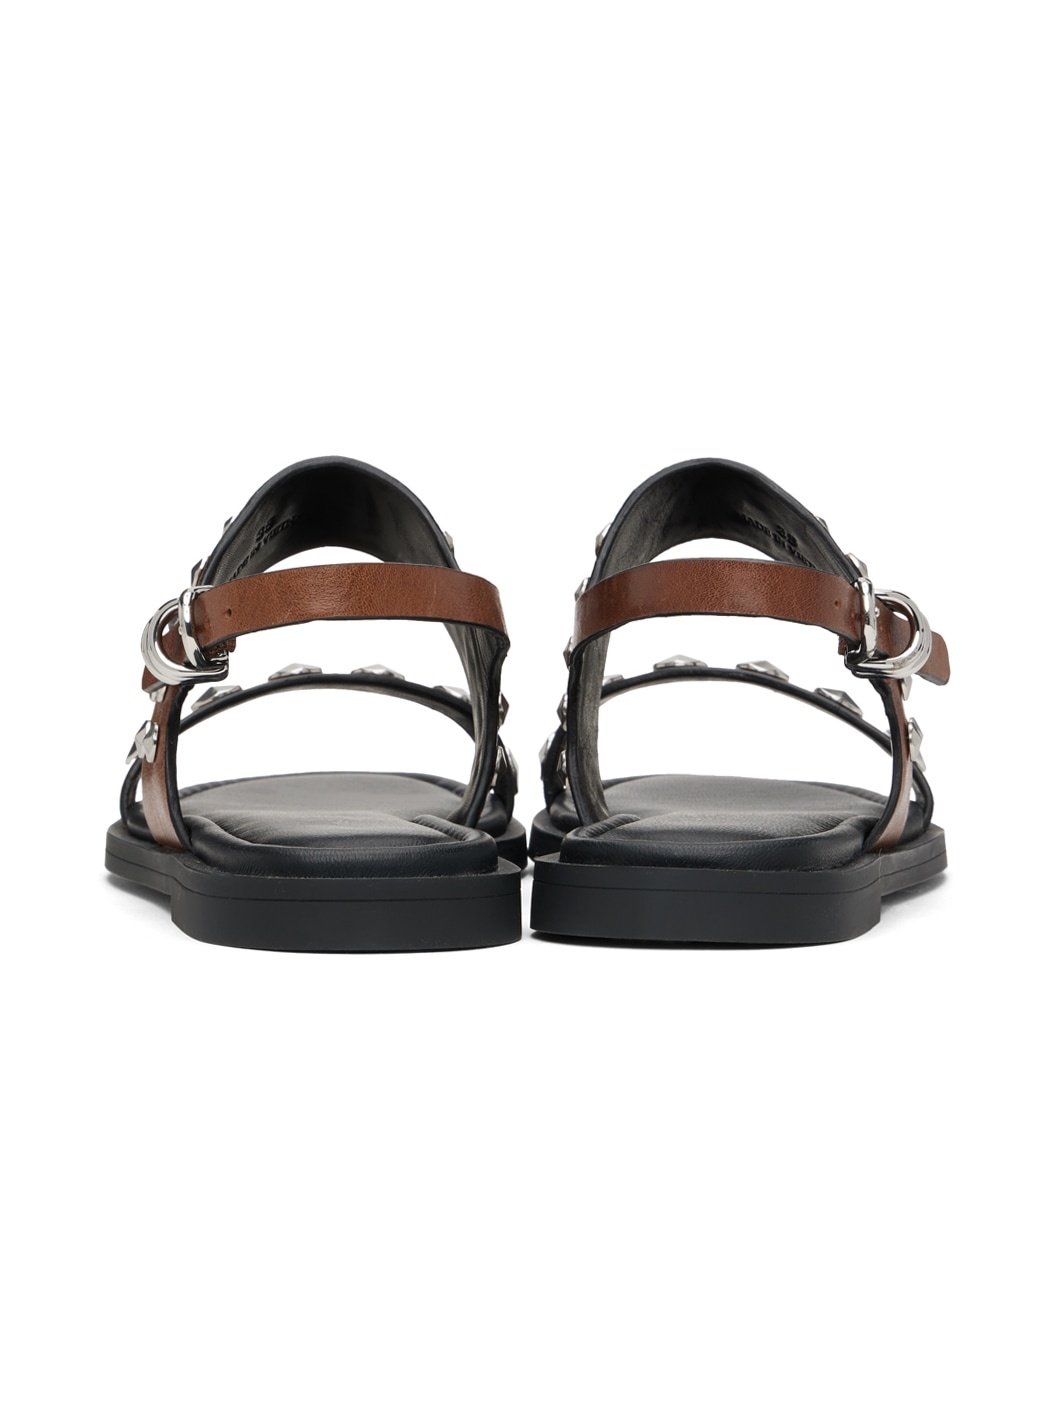 Brown & Black Geo Stud Sandals - 2